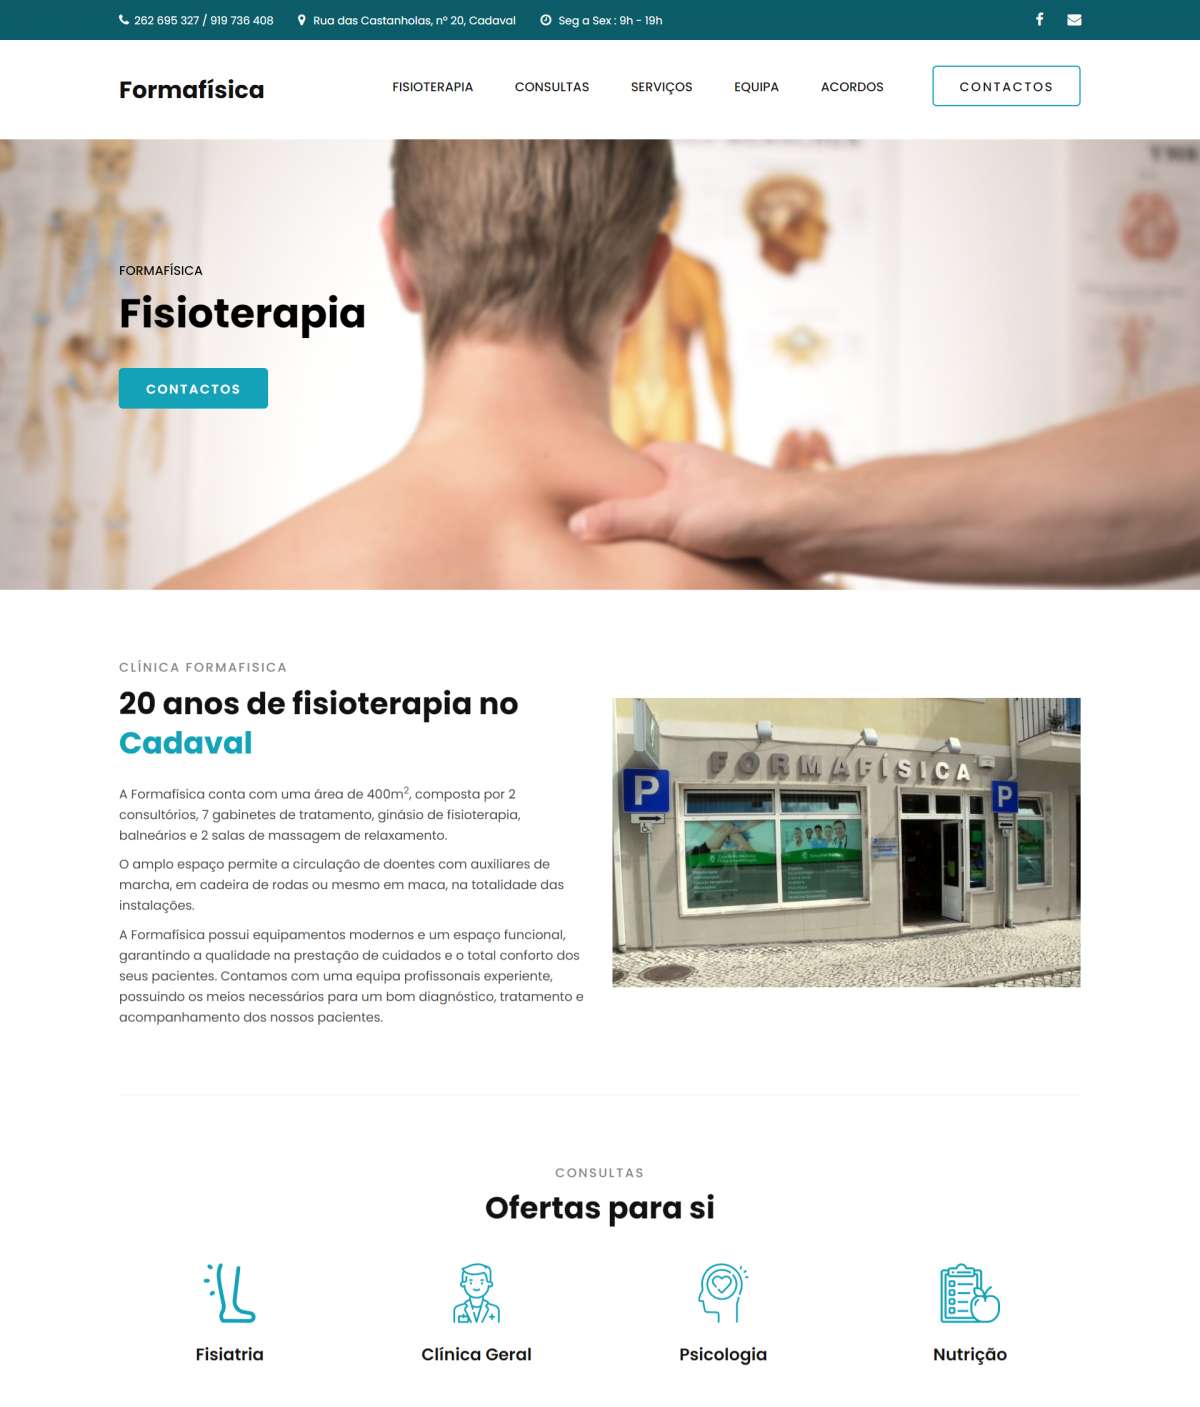 Francisco Ferreira - Upscape Studio - Lisboa - Design de Aplicações Móveis